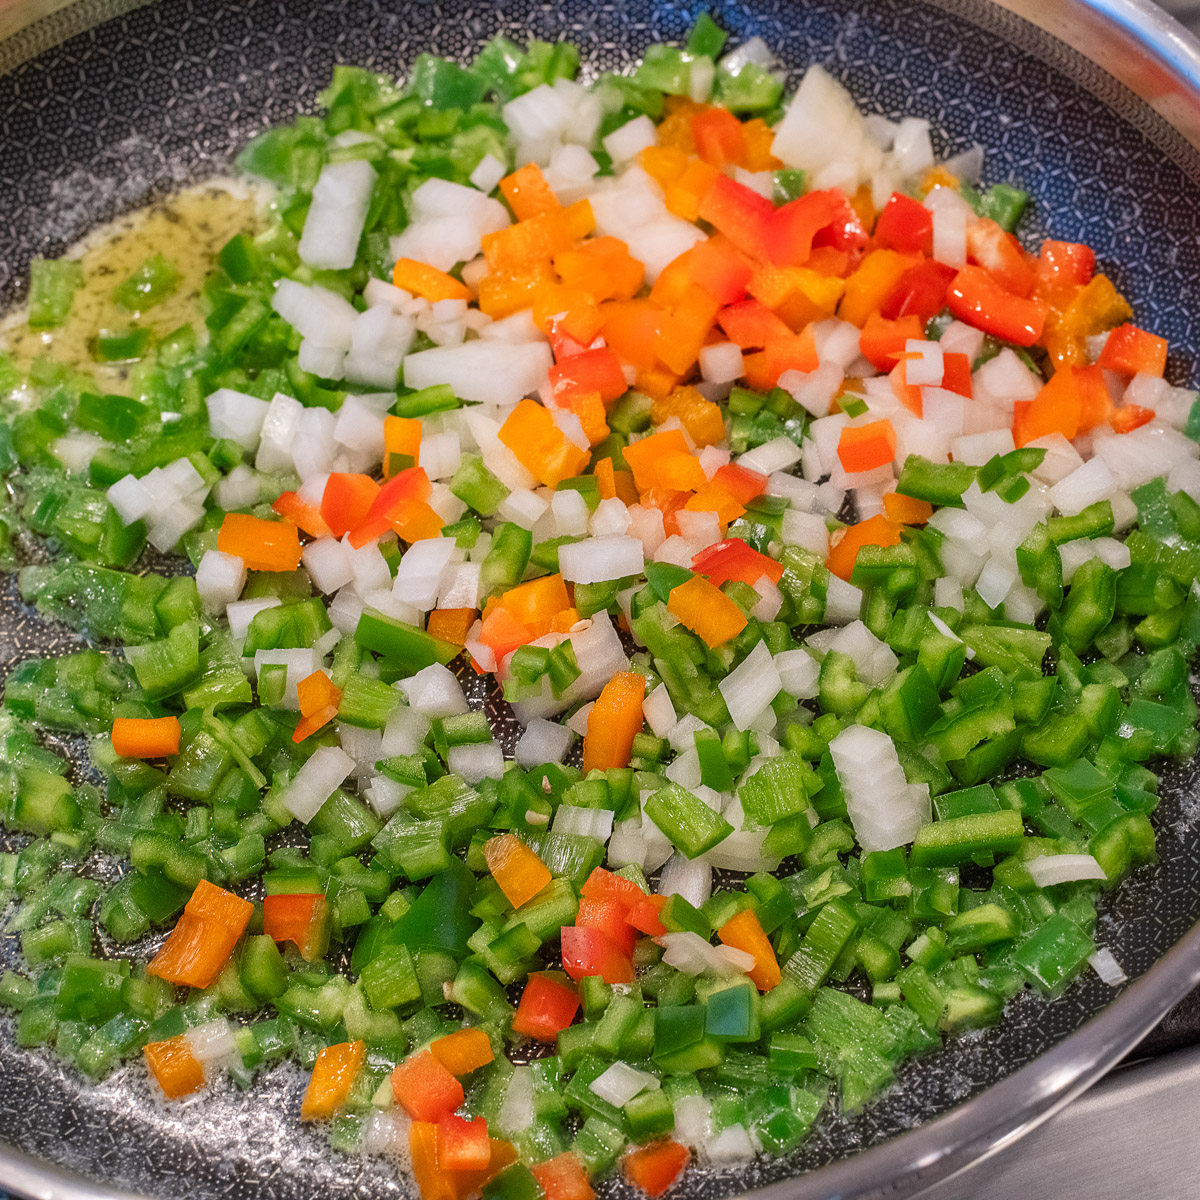 Sauté vegetables until tender.